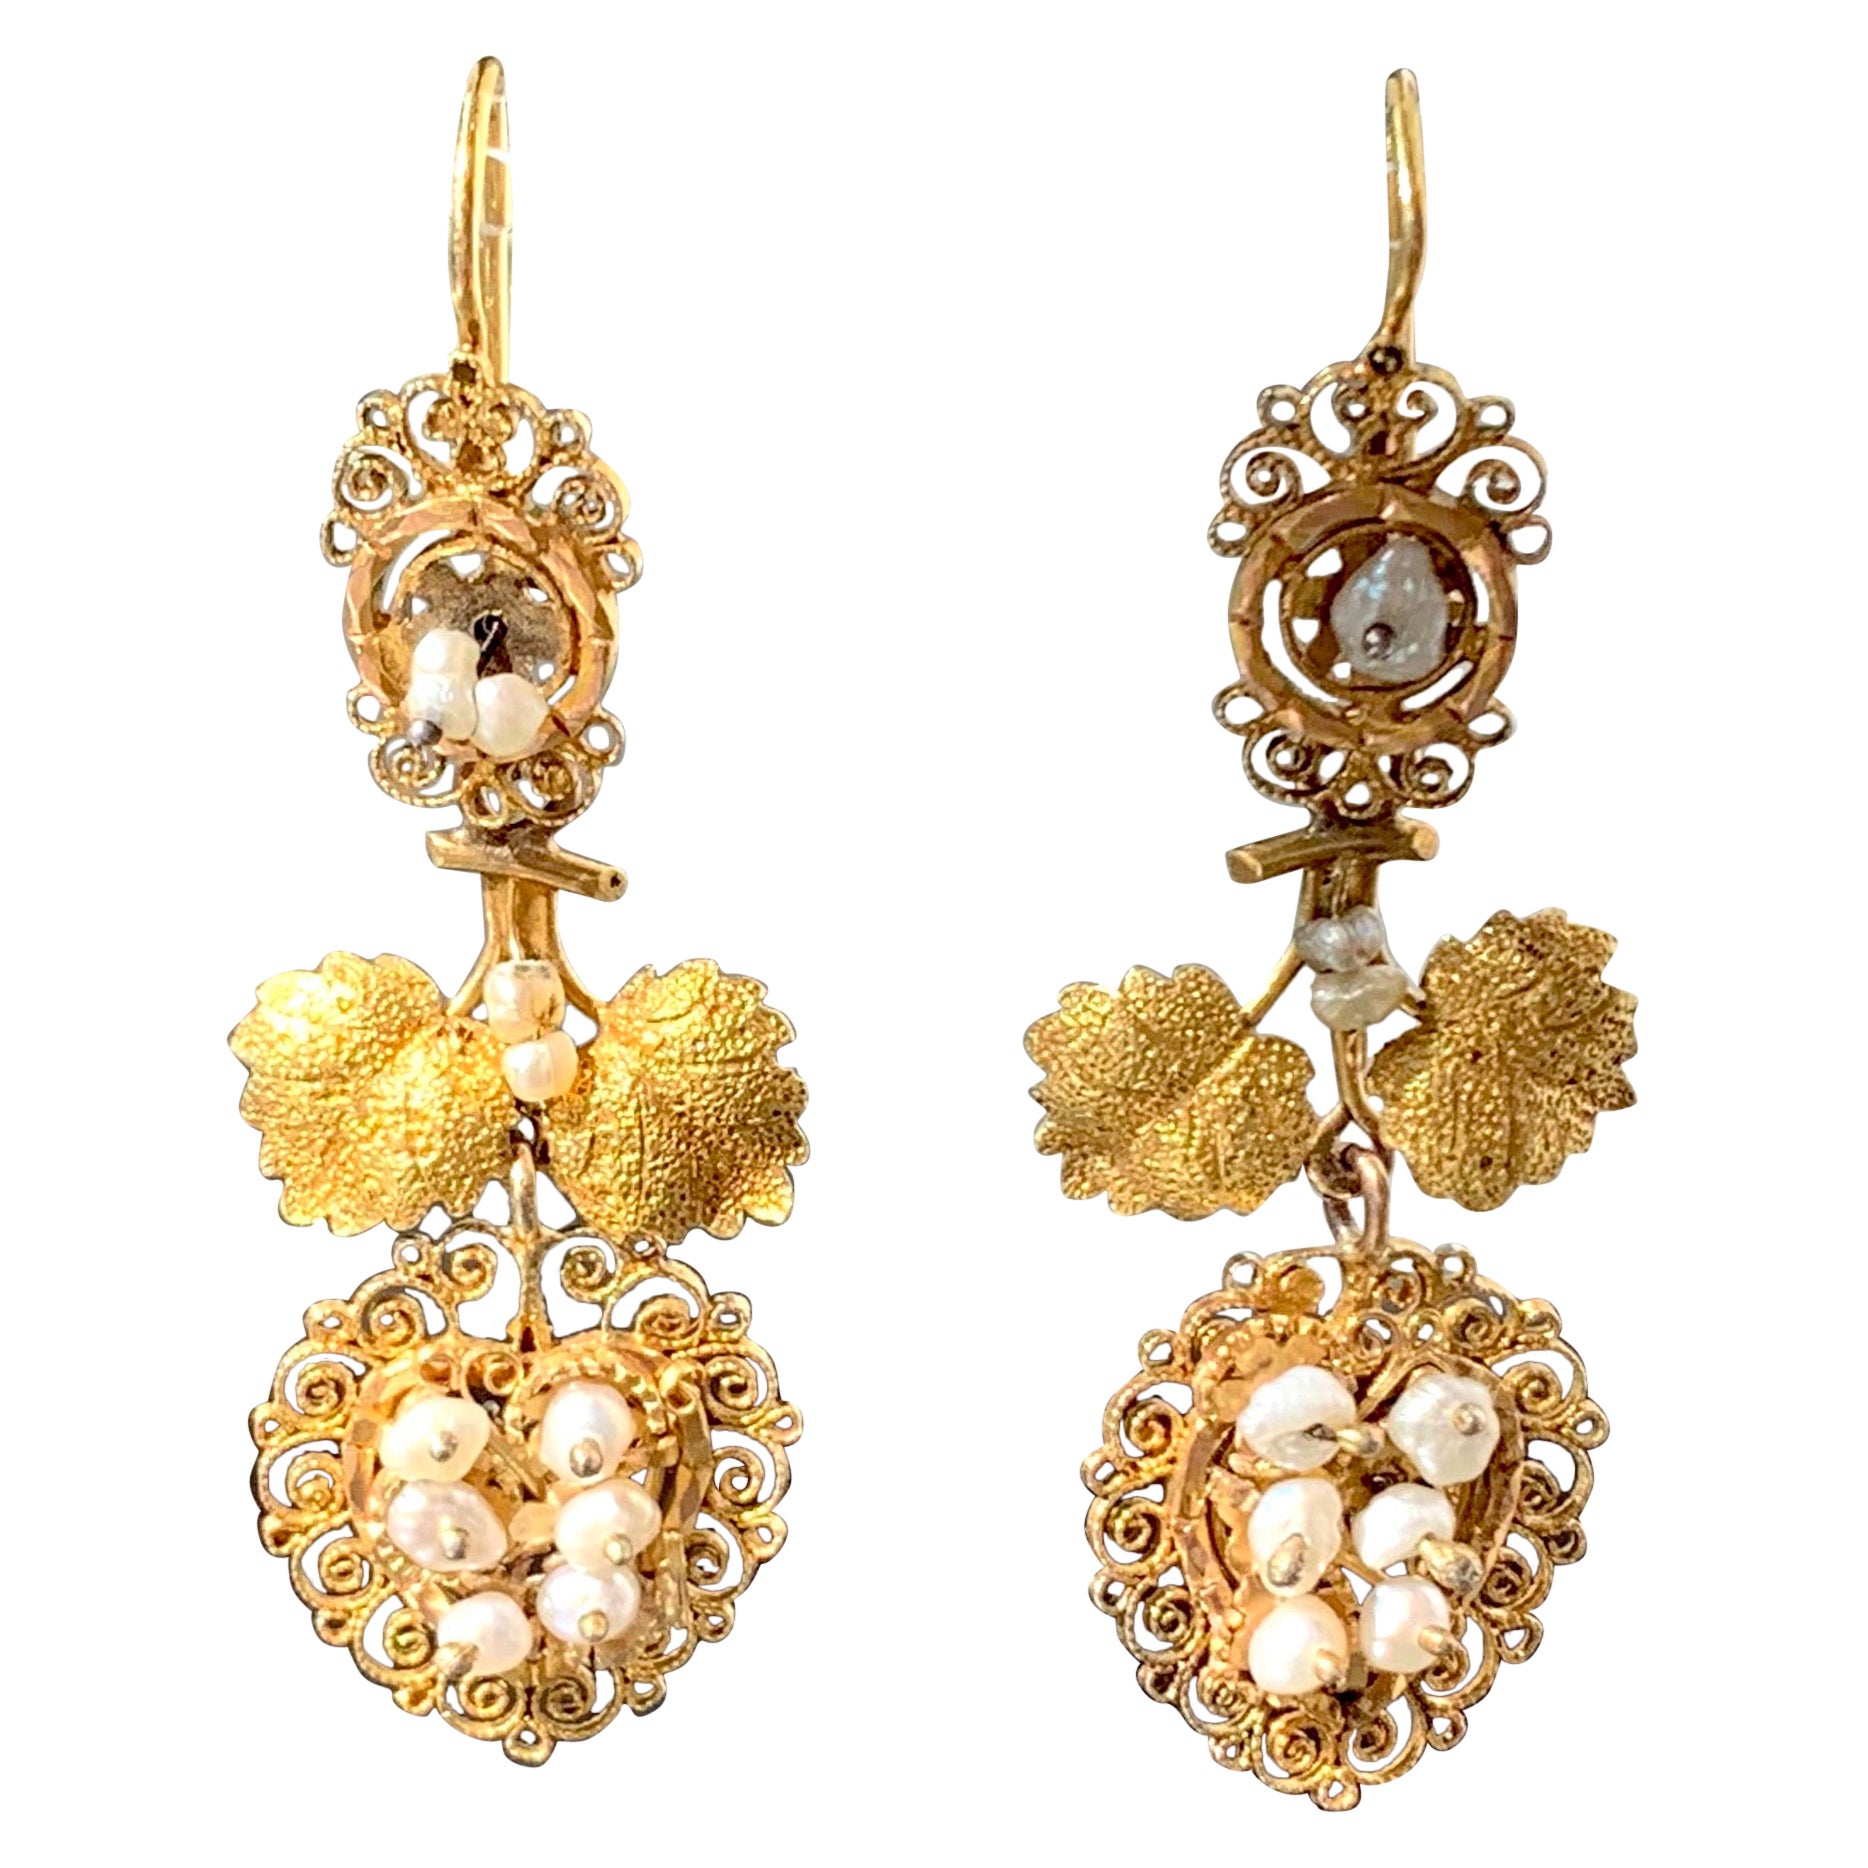 Pendants d'oreilles pendants anciens en or avec perles naturelles, feuilles de vigne, raisins et fil d'or 